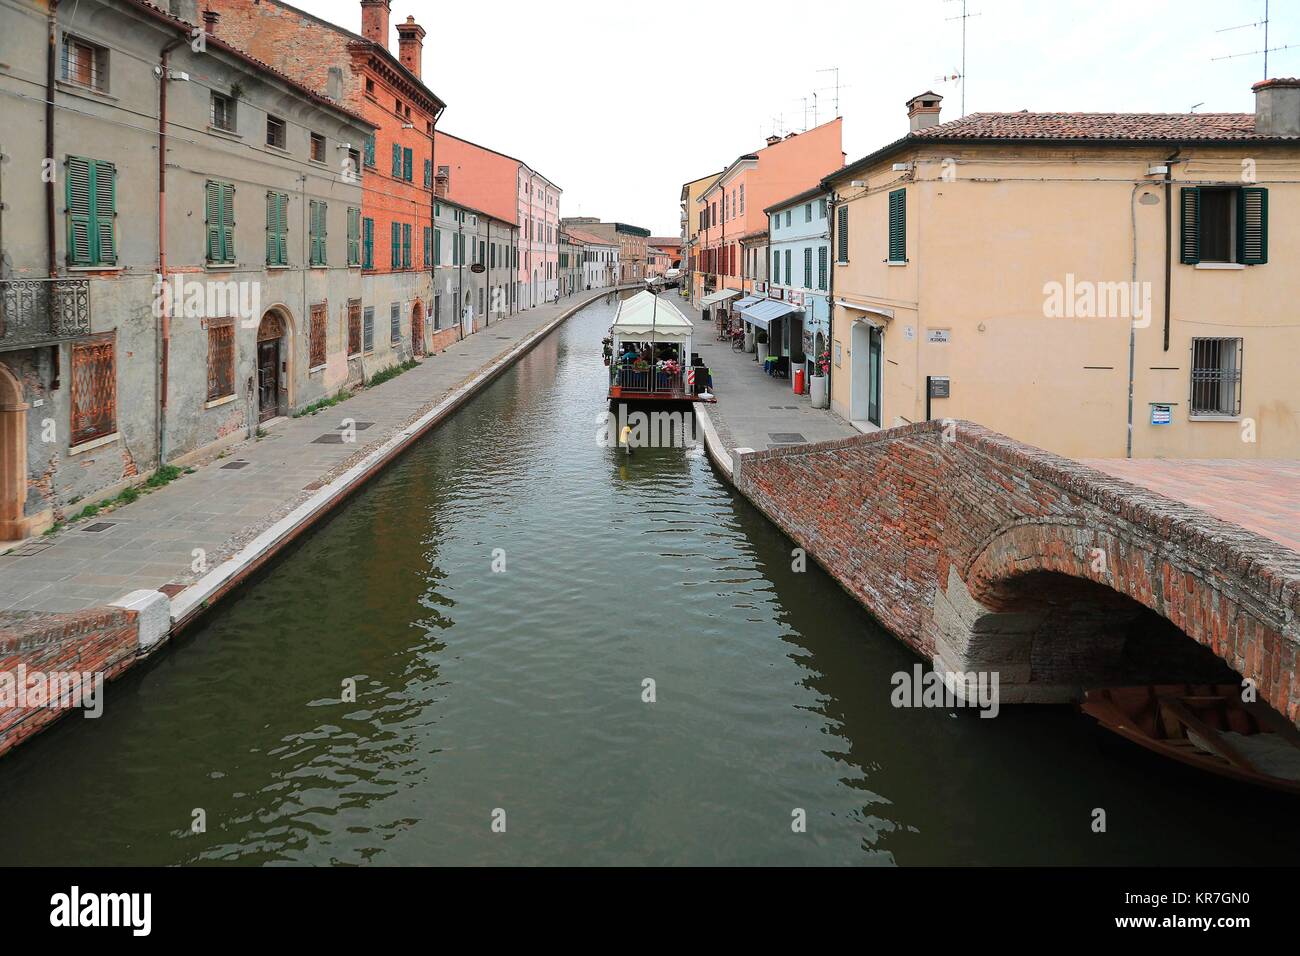 Canal with boat and colorful houses in Comacchio Village, Ferrara, Italy. June 14, 2017    Credit © Nuccio Goglia/Sintesi/Alamy Stock Photo Stock Photo